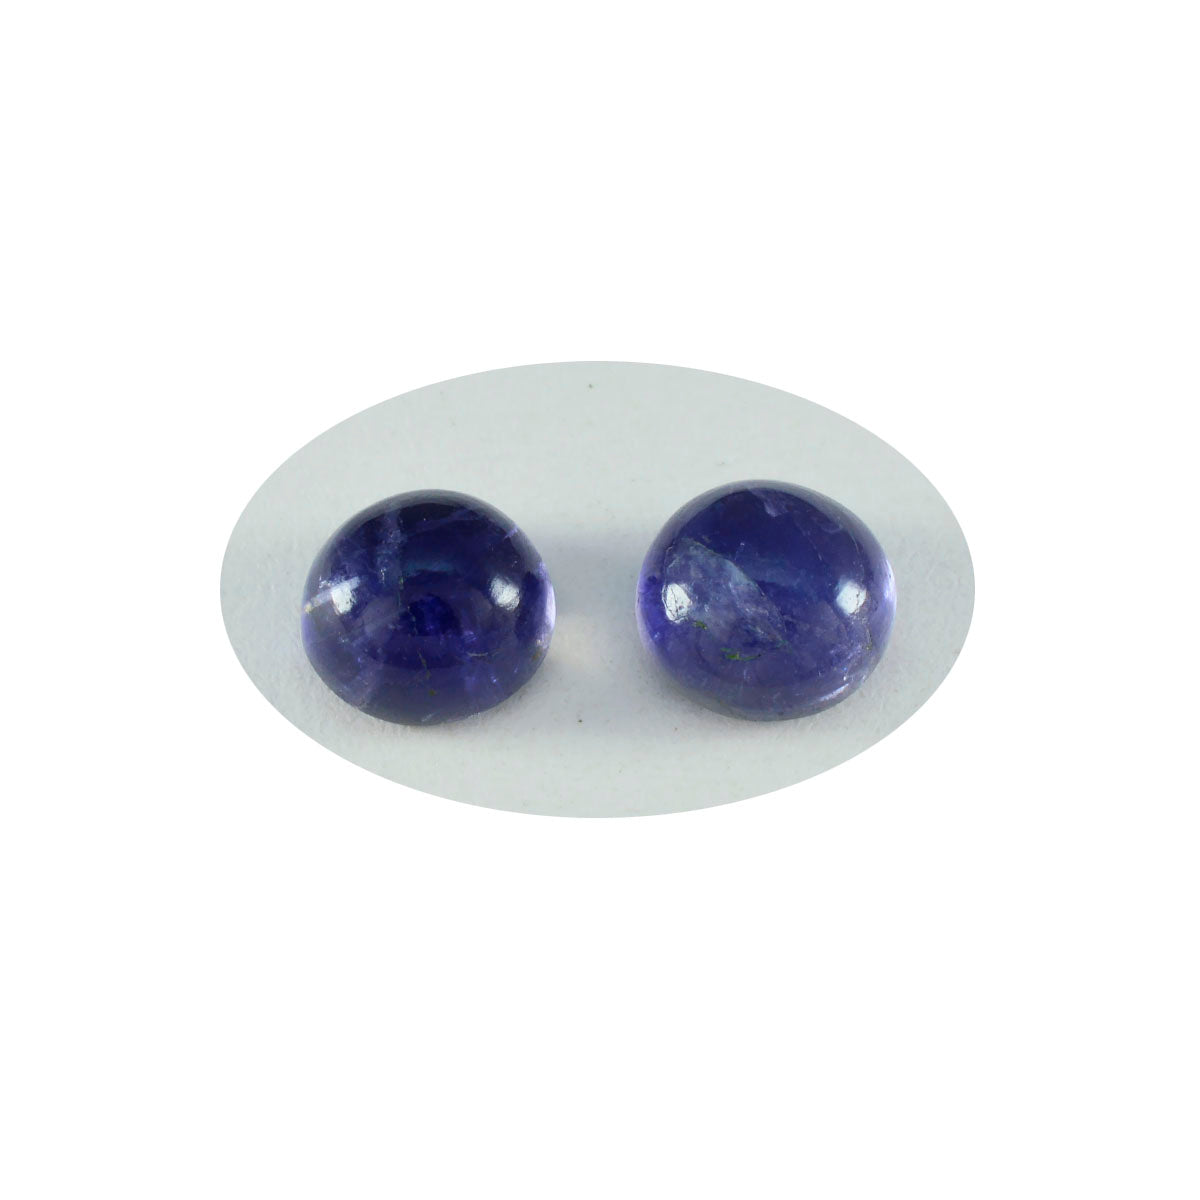 riyogems 1pc ブルー アイオライト カボション 11x11 mm ラウンド形状の素晴らしい品質の宝石